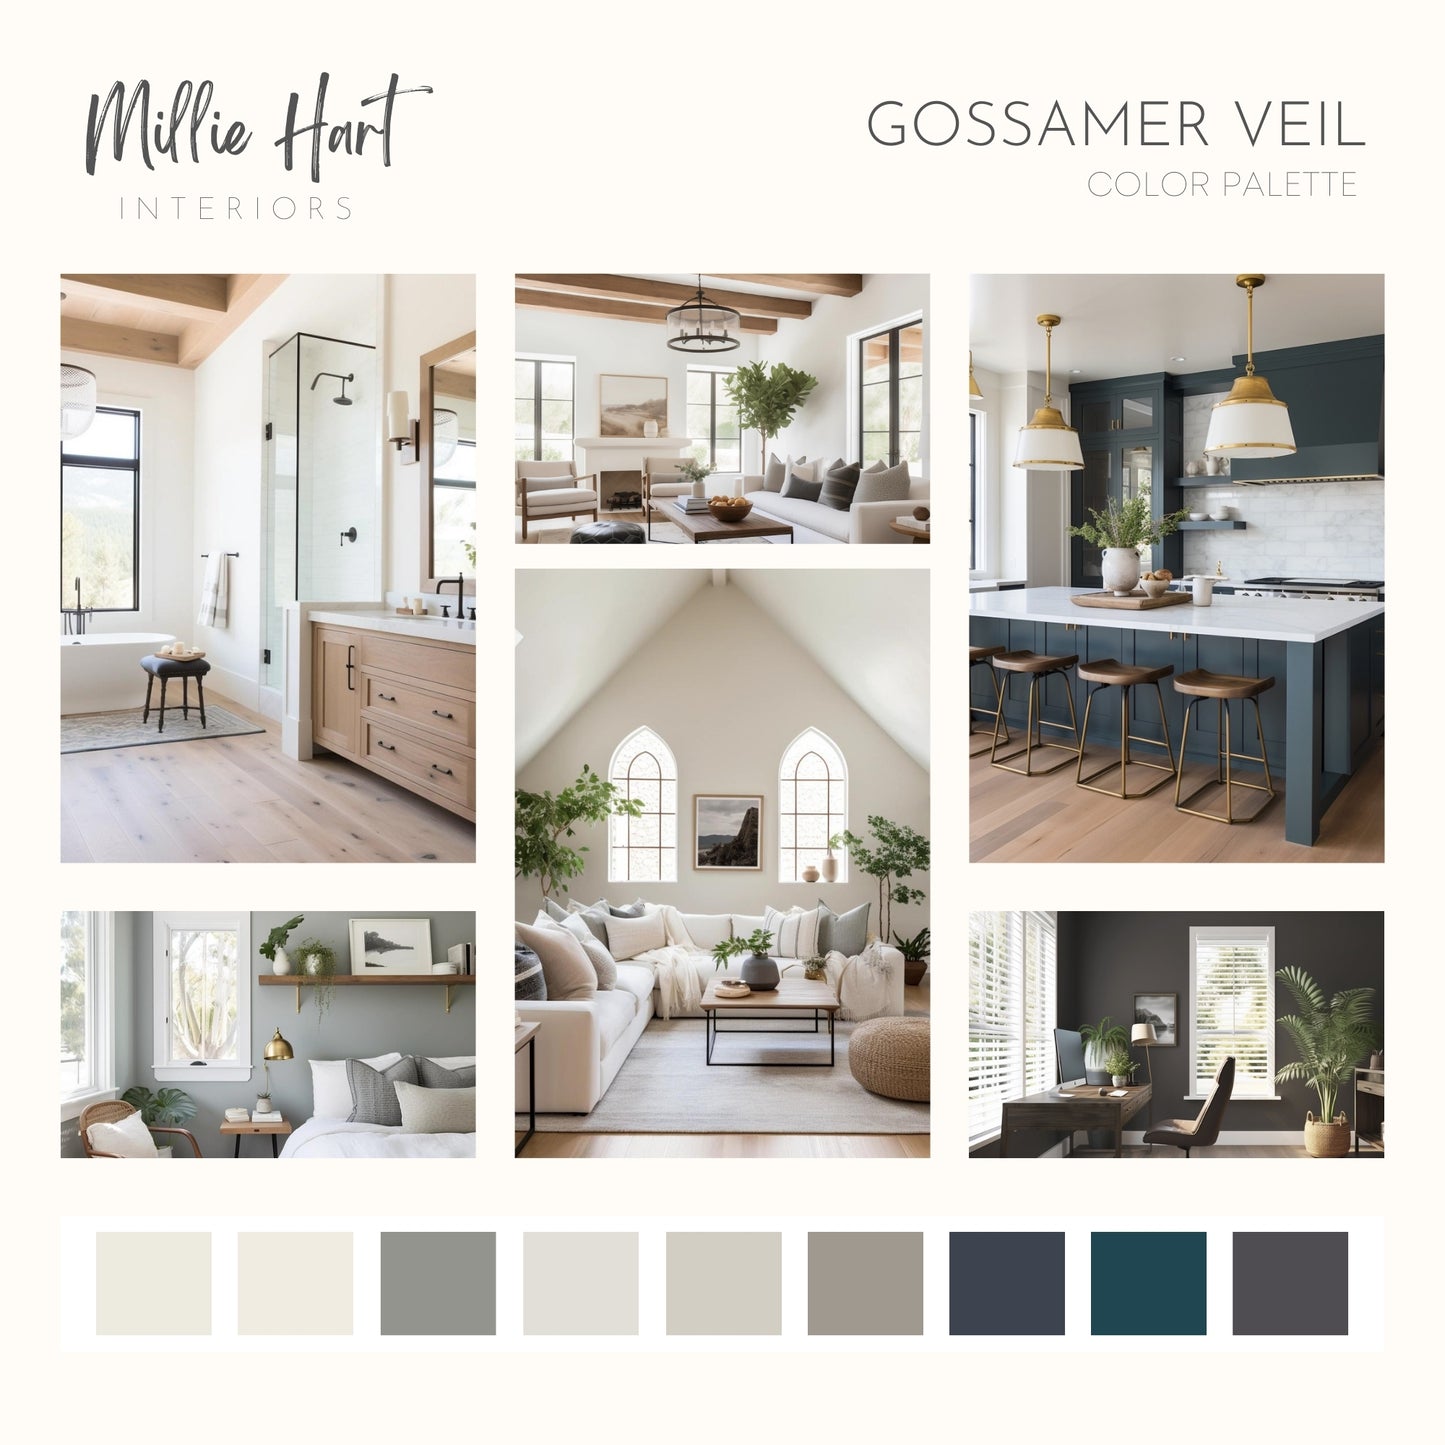 Gossamer Veil Sherwin Williams Paint Palette, Neutral Interior Paint Colors, Lake House Color Scheme, Greek Villa